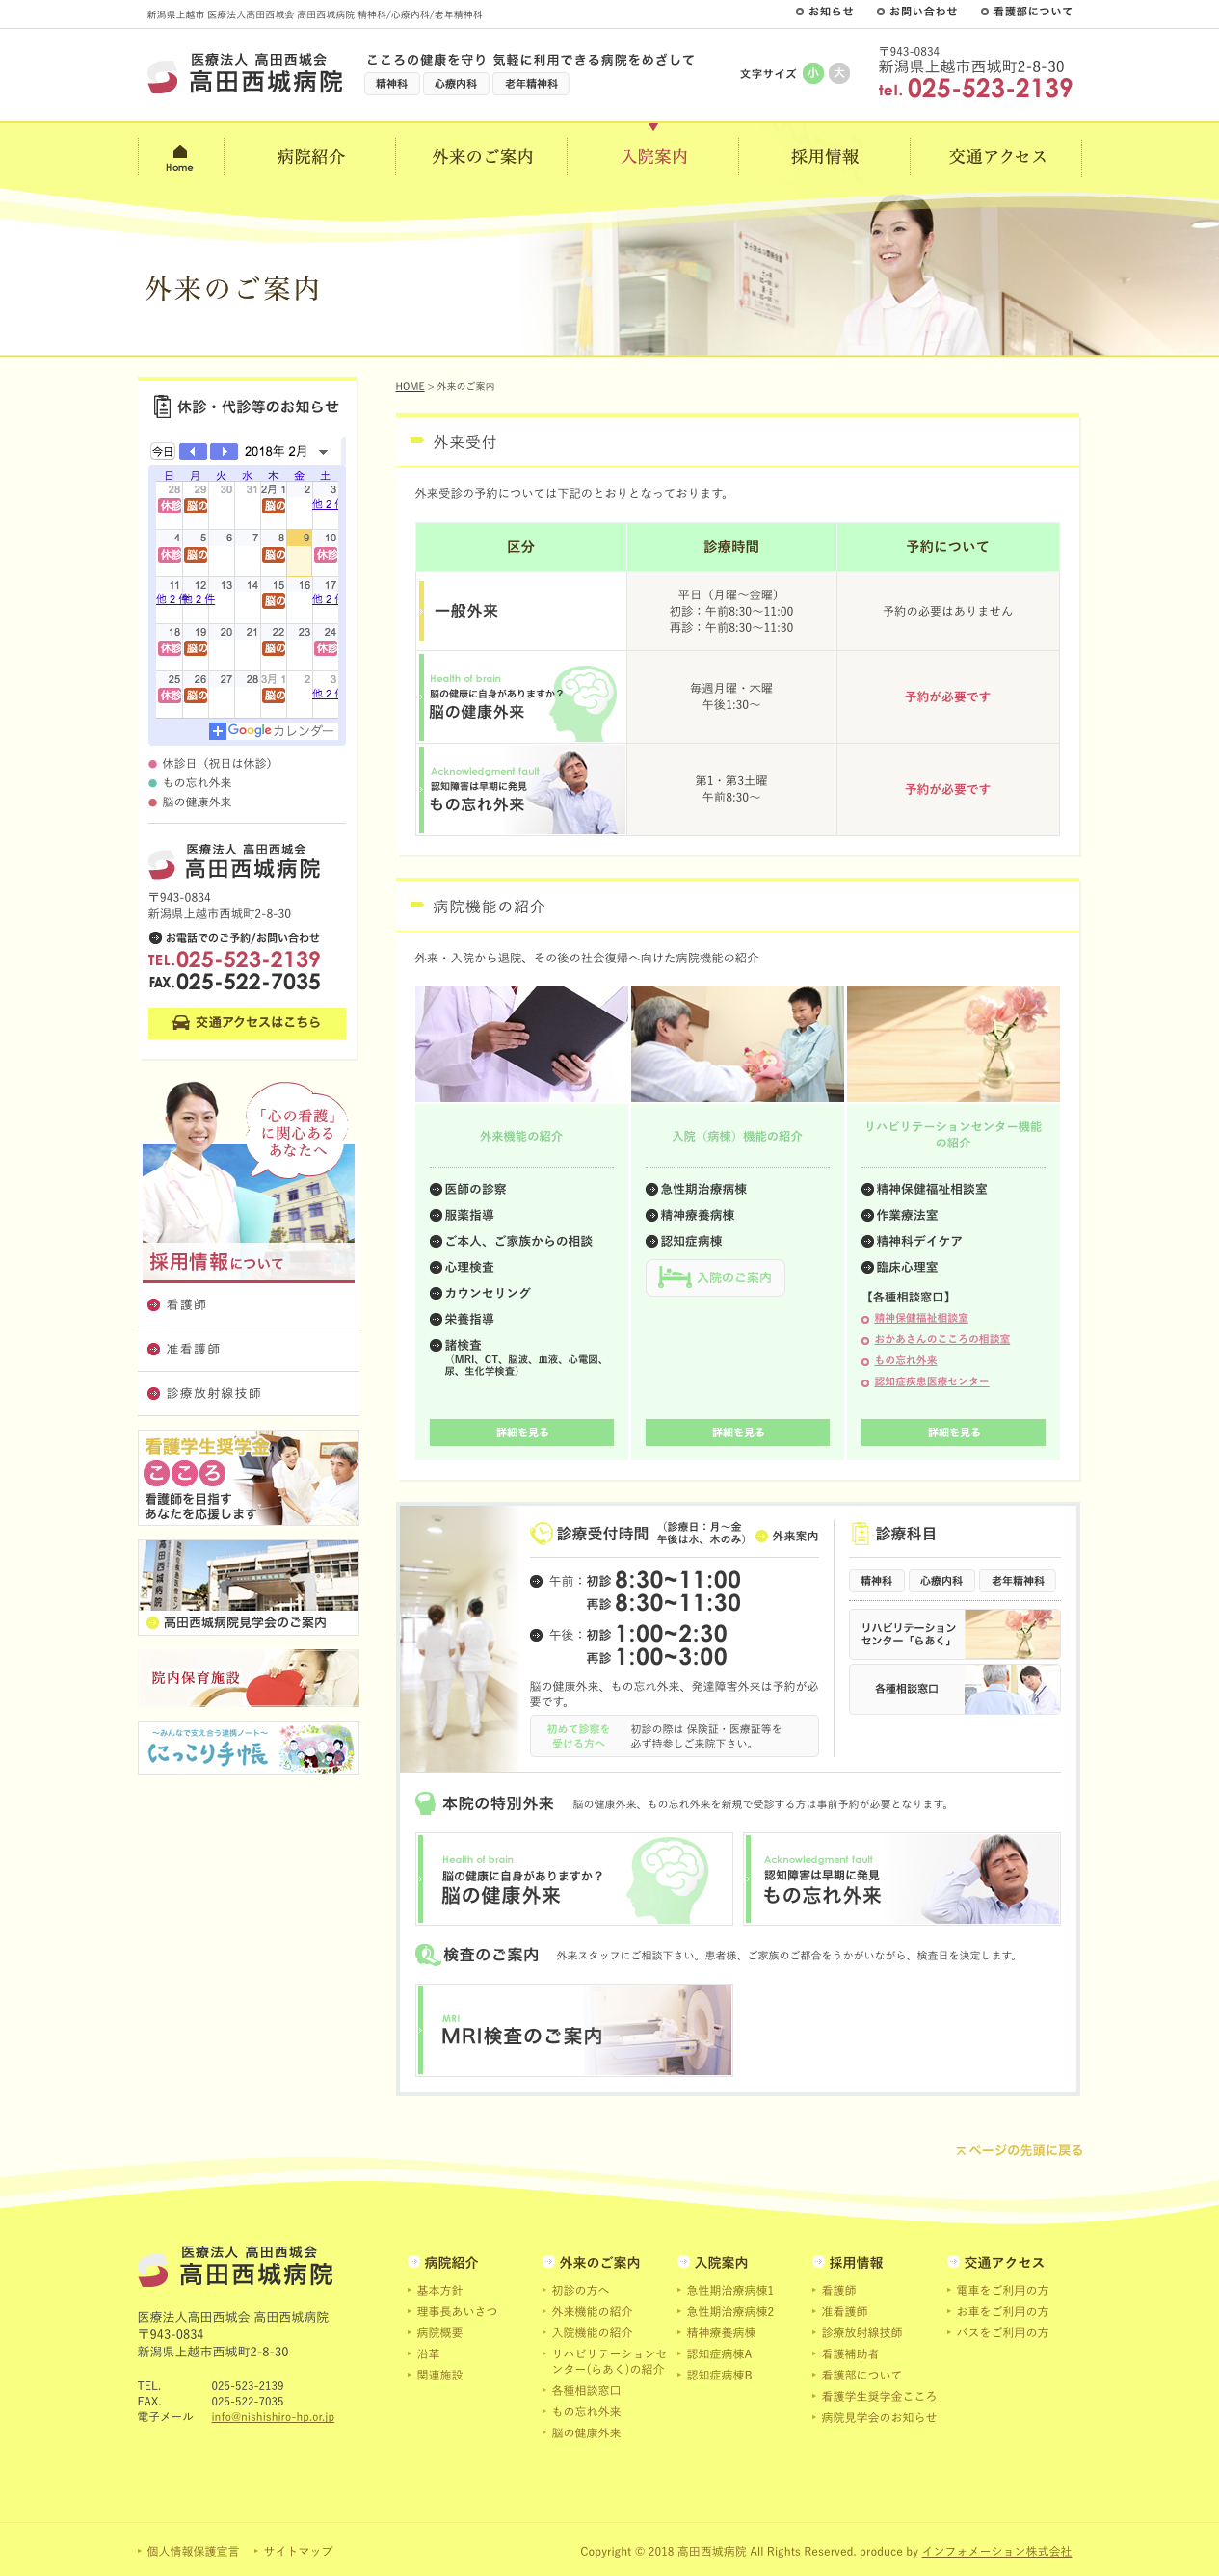 高田西城病院 様のホームページ